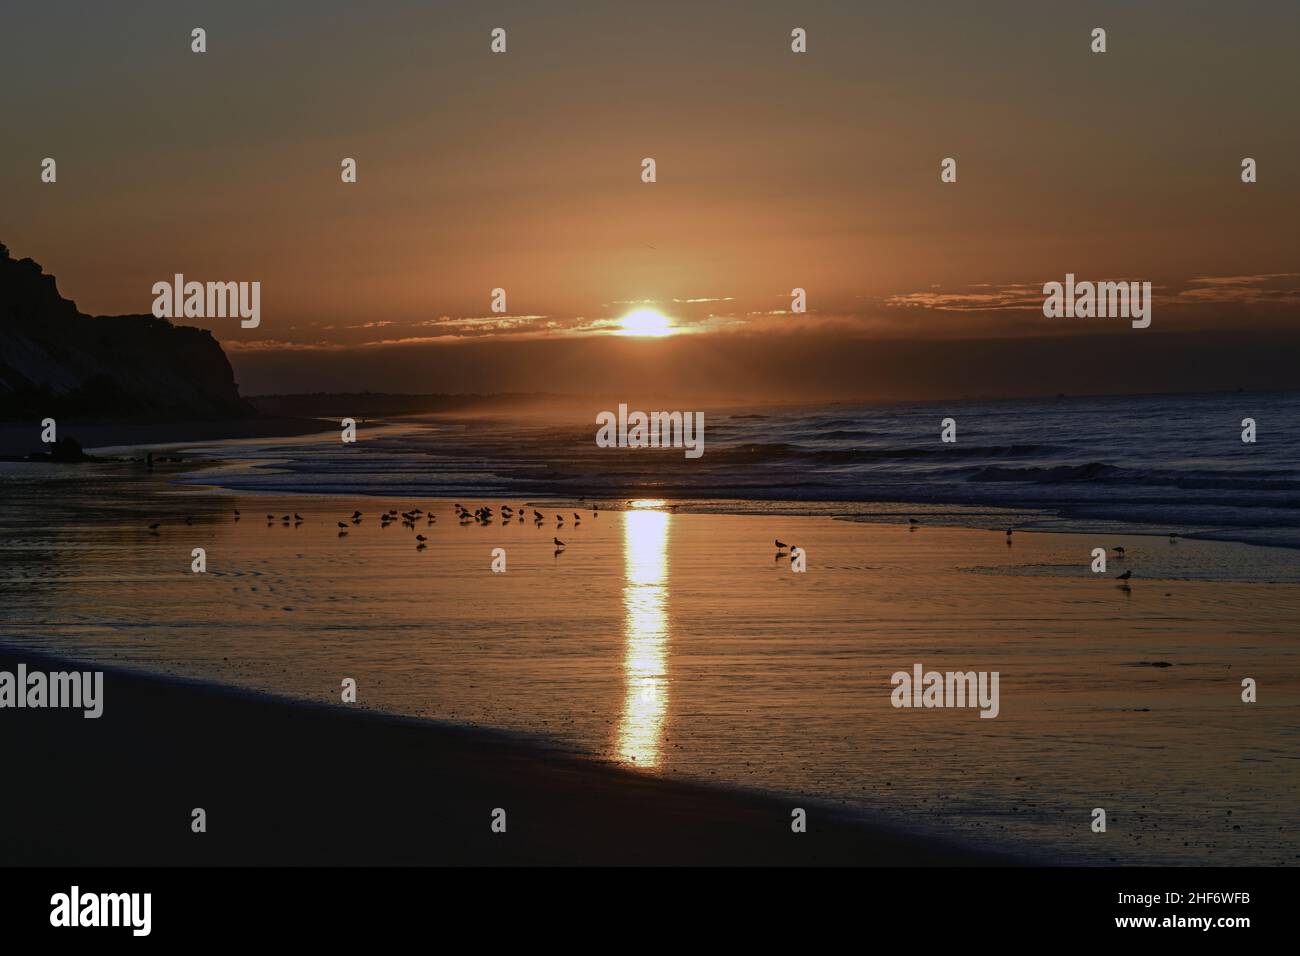 Alba sulla spiaggia di Albufeira, surf dell'Atlantico in controluce Foto Stock